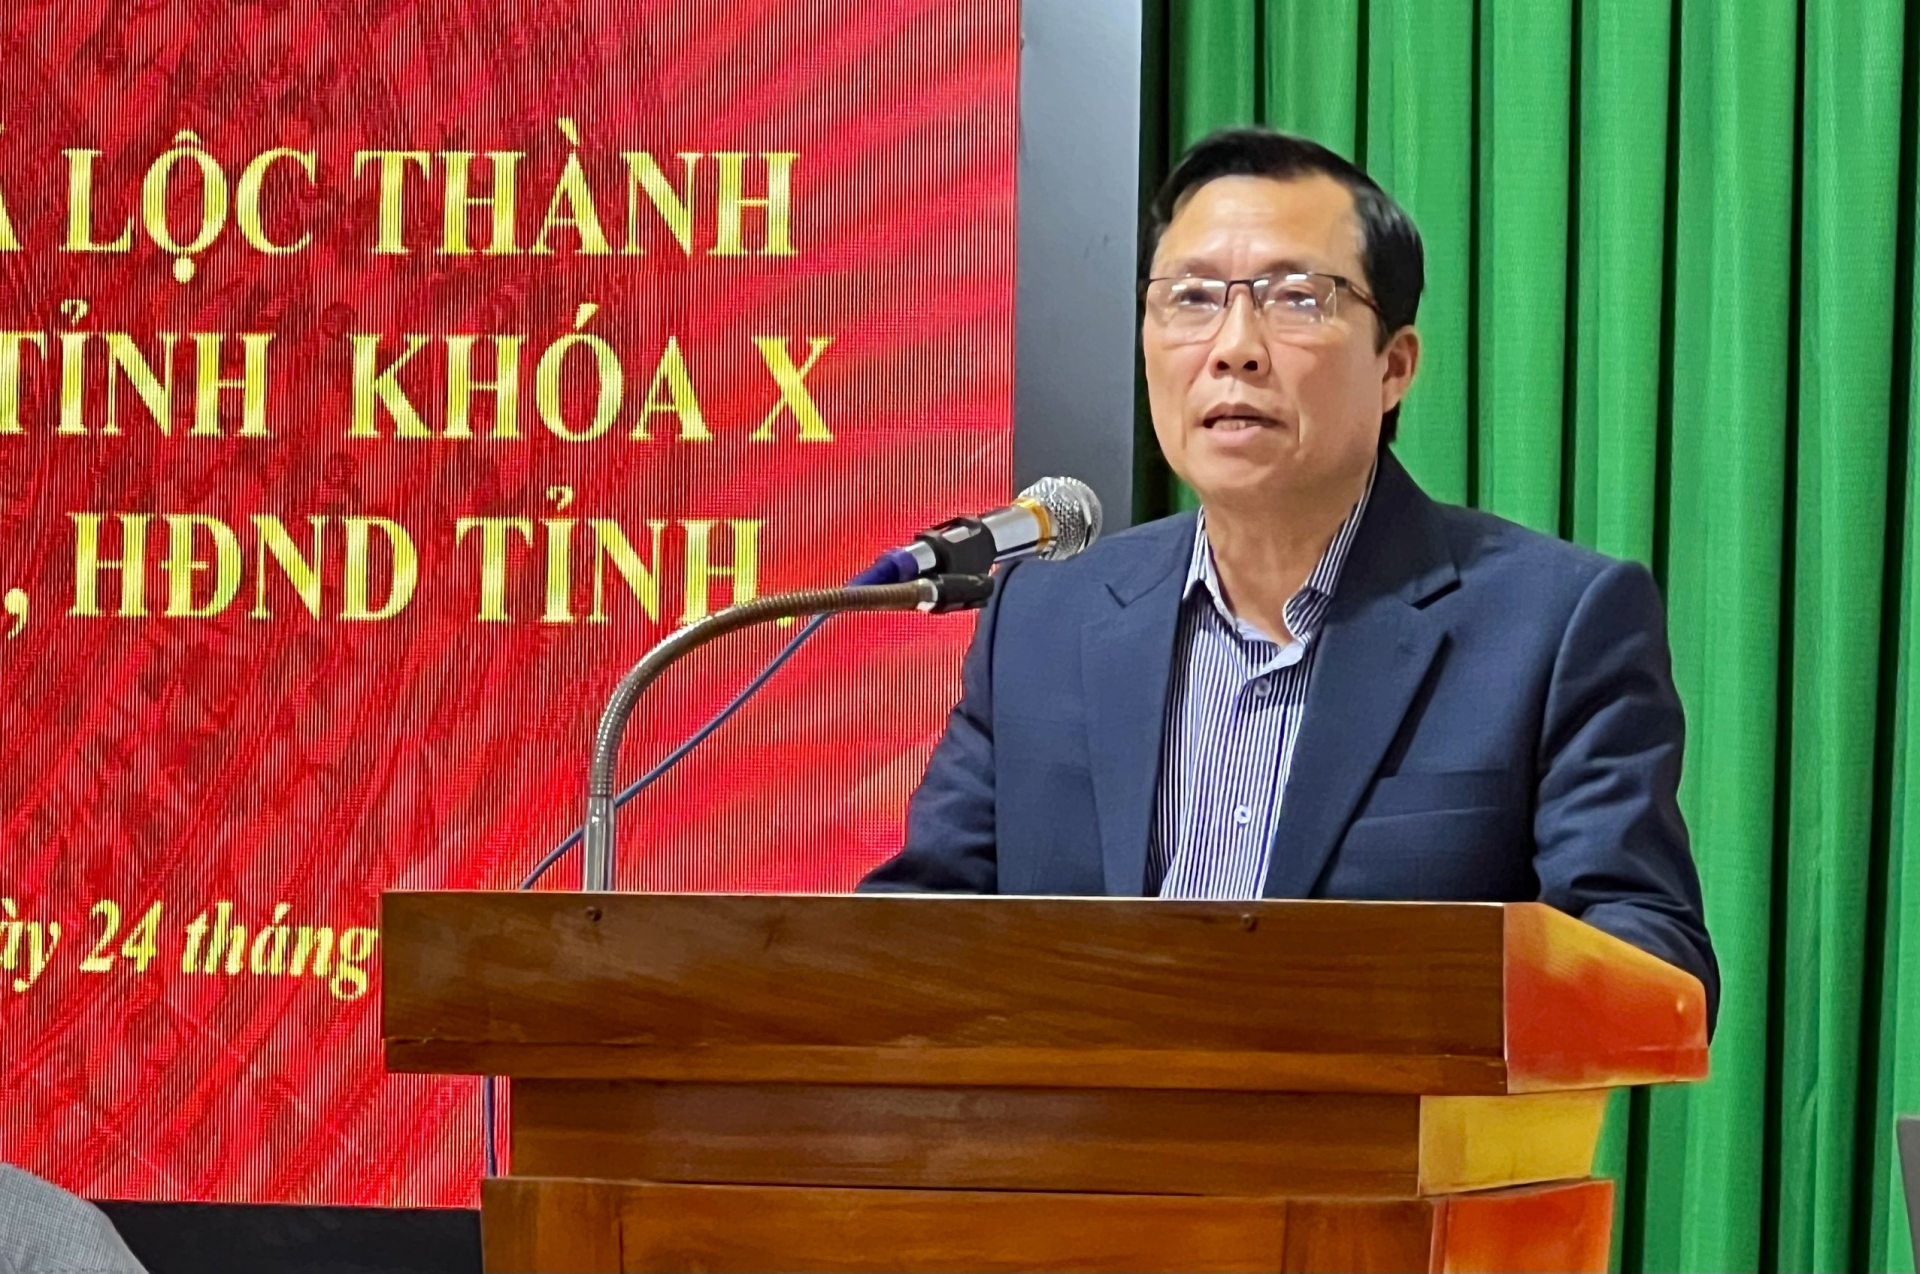 Ông Trịnh Văn Thảo - Phó Chủ tịch UBND huyện Bảo Lâm tiếp thu, giải trình các ý kiến của cư tri thuộc thẩm quyền